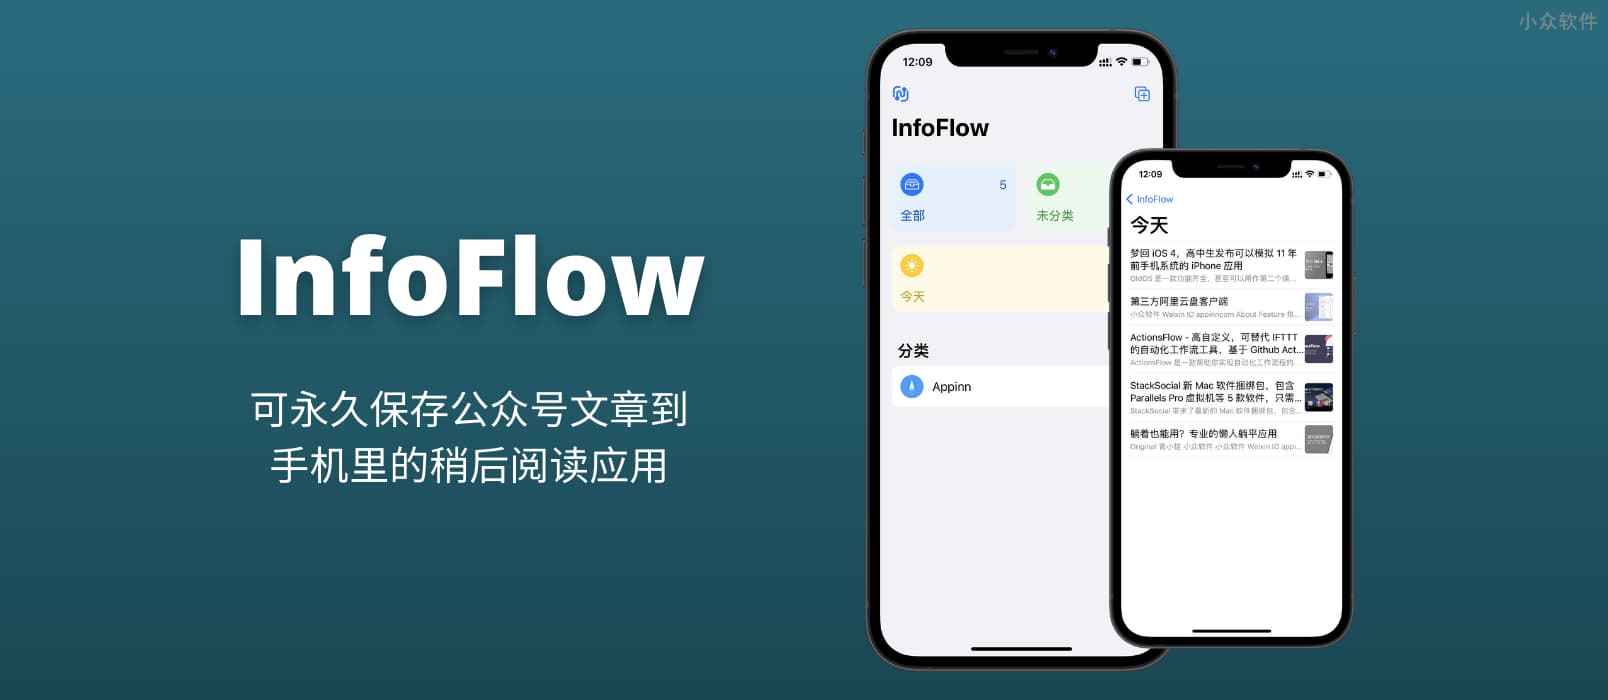 InfoFlow – 可永久保存公众号文章到手机里的稍后阅读应用[iPhone/iPad]